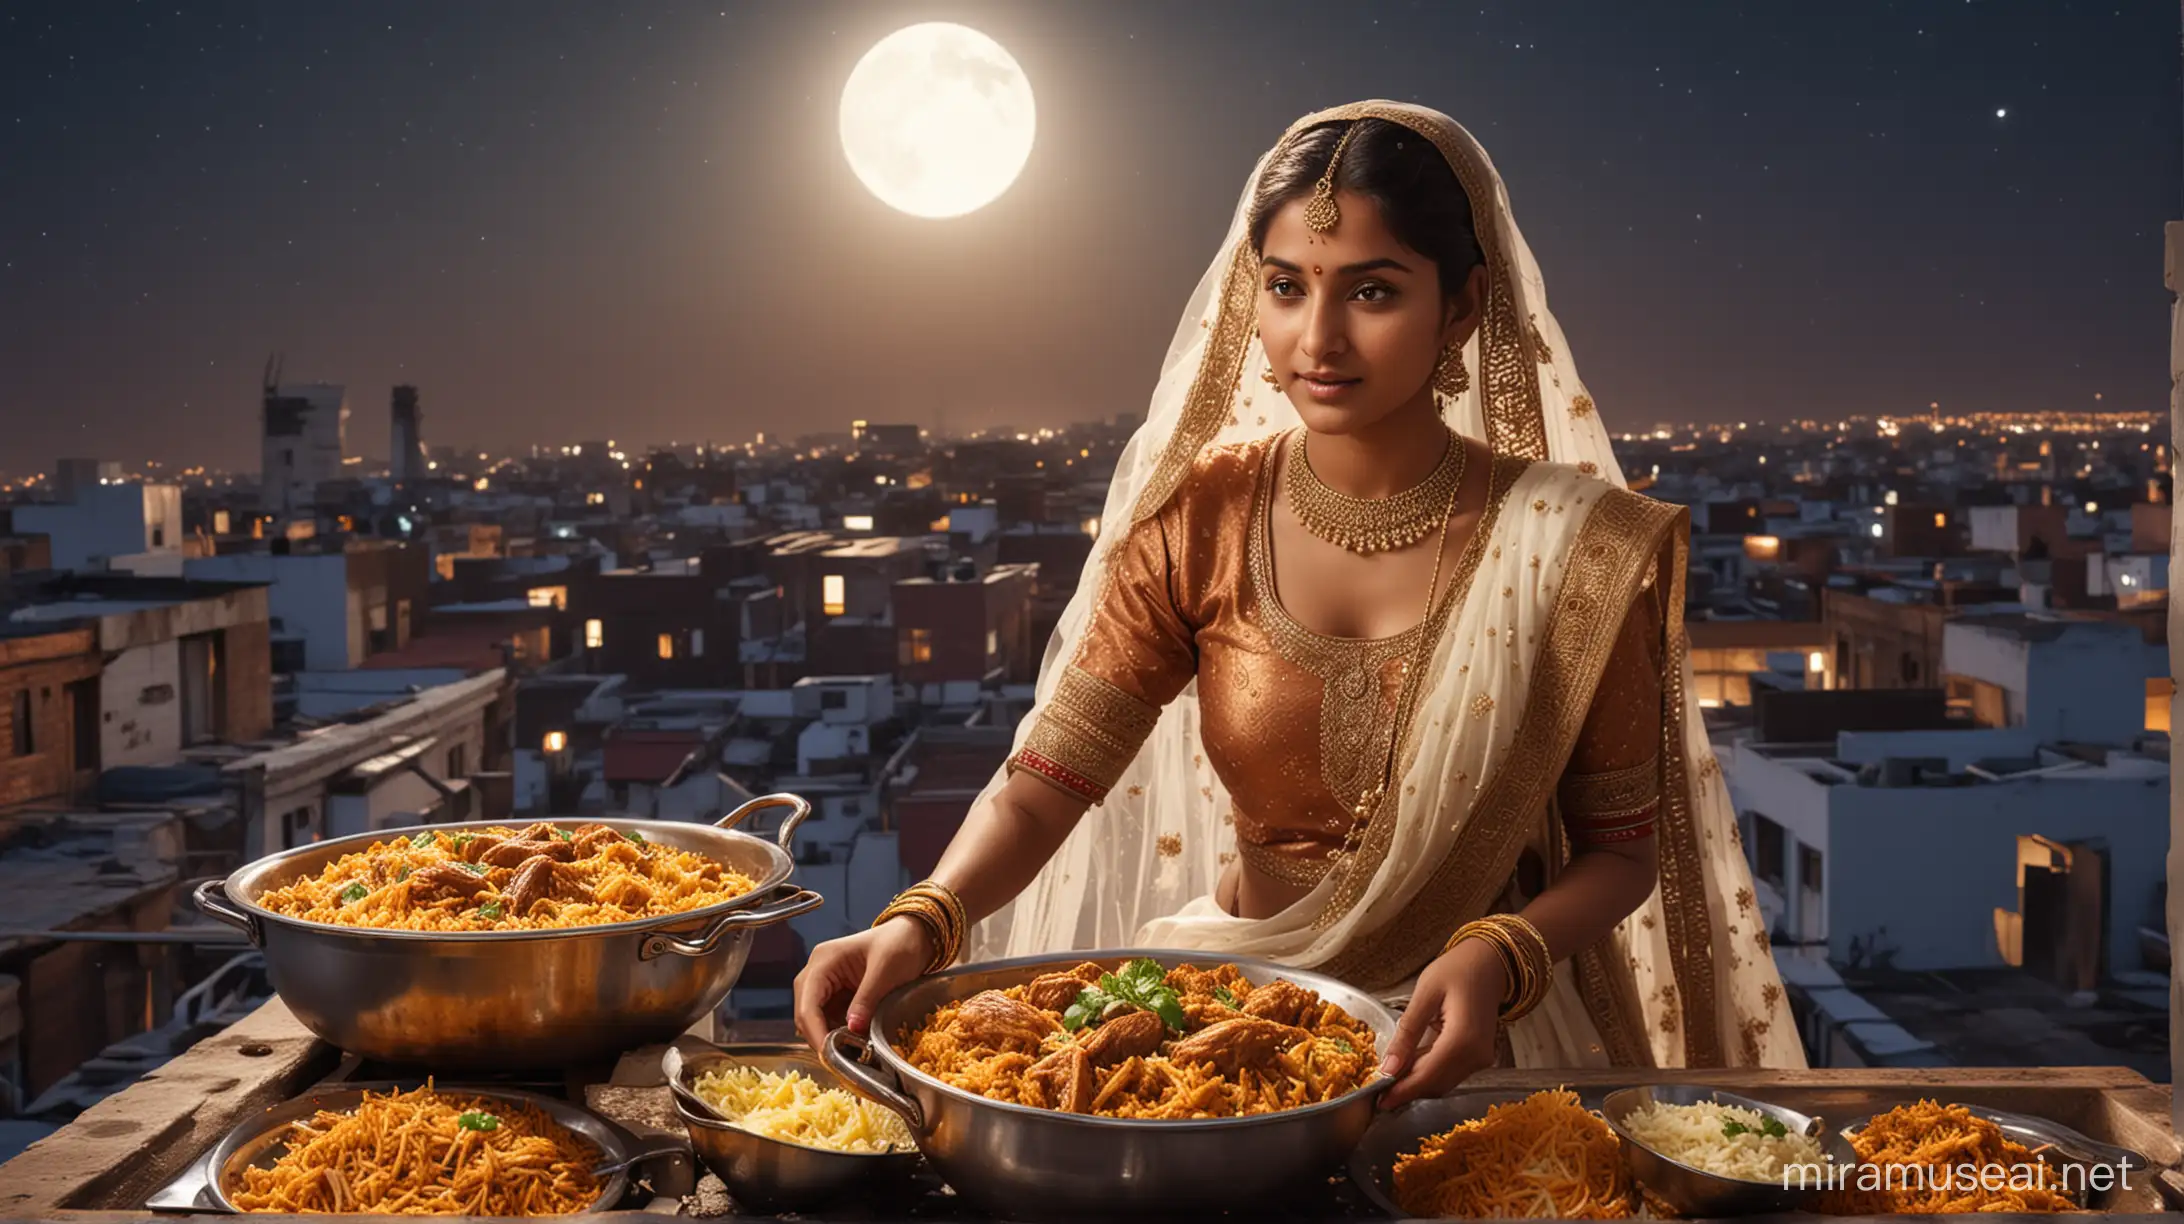 Indian Bride Cooking Biryani on Rooftop Under Moonlight